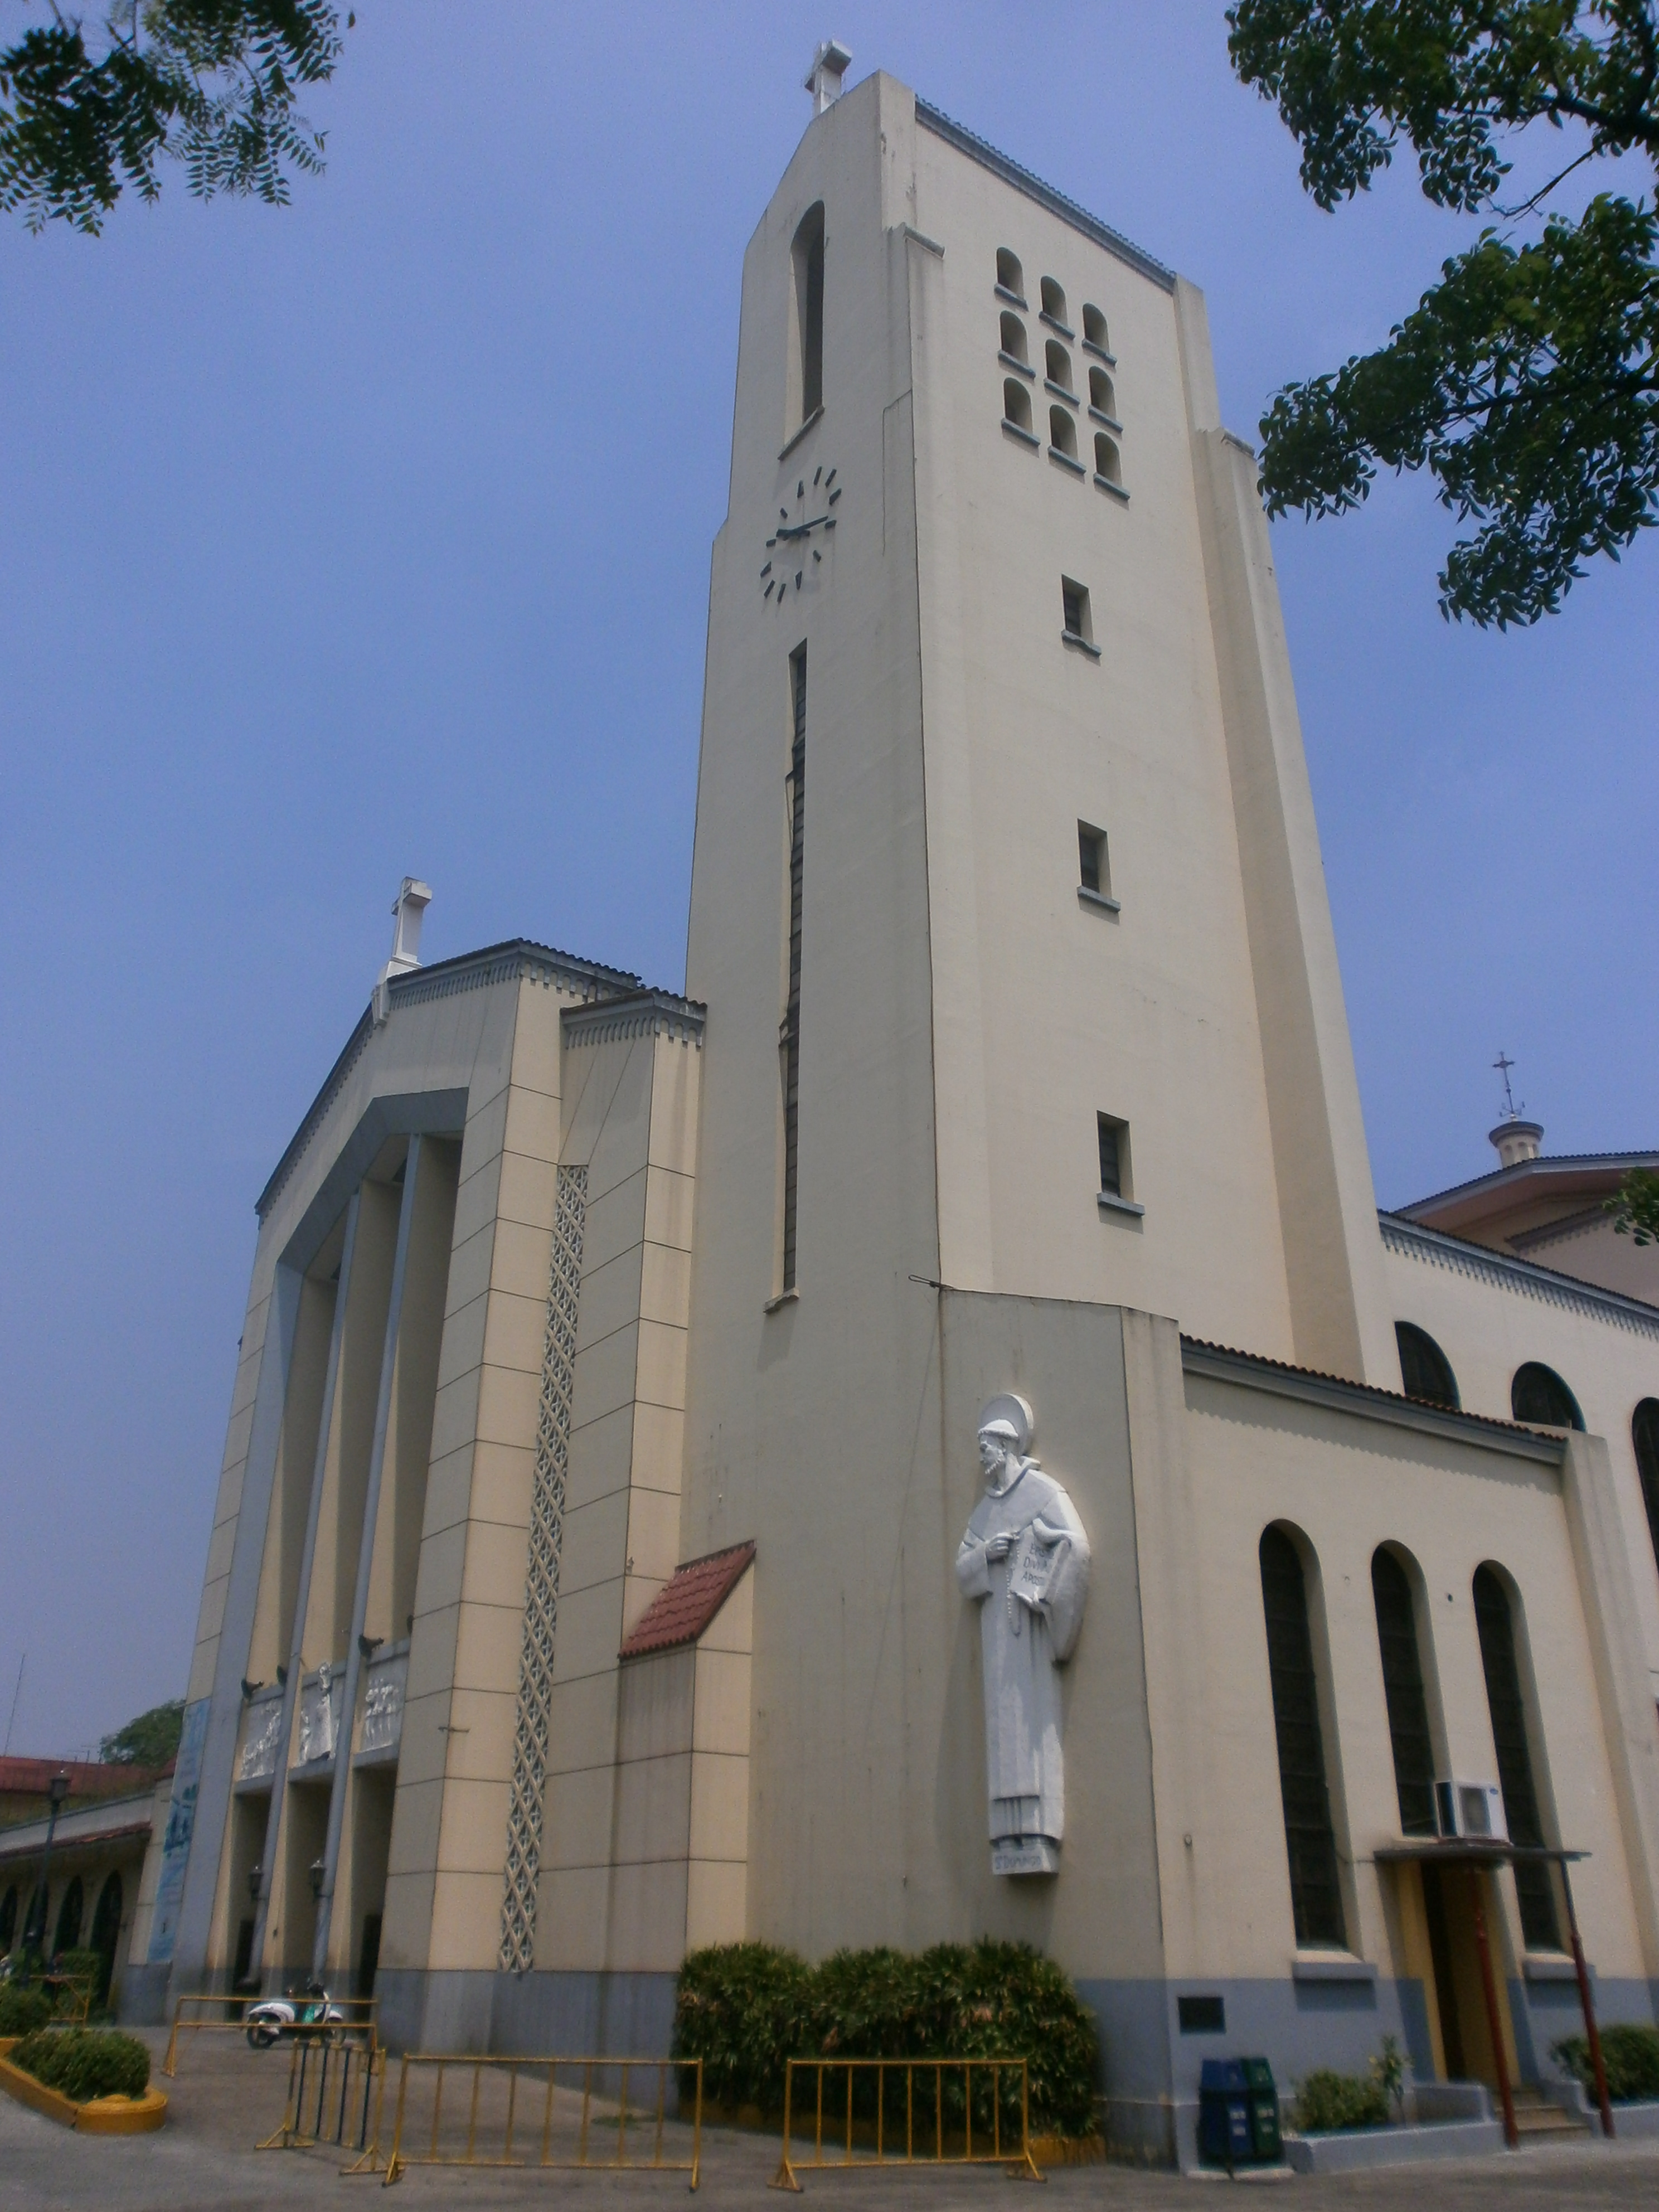 Santo Domingo Church (Quezon City) - Wikipedia